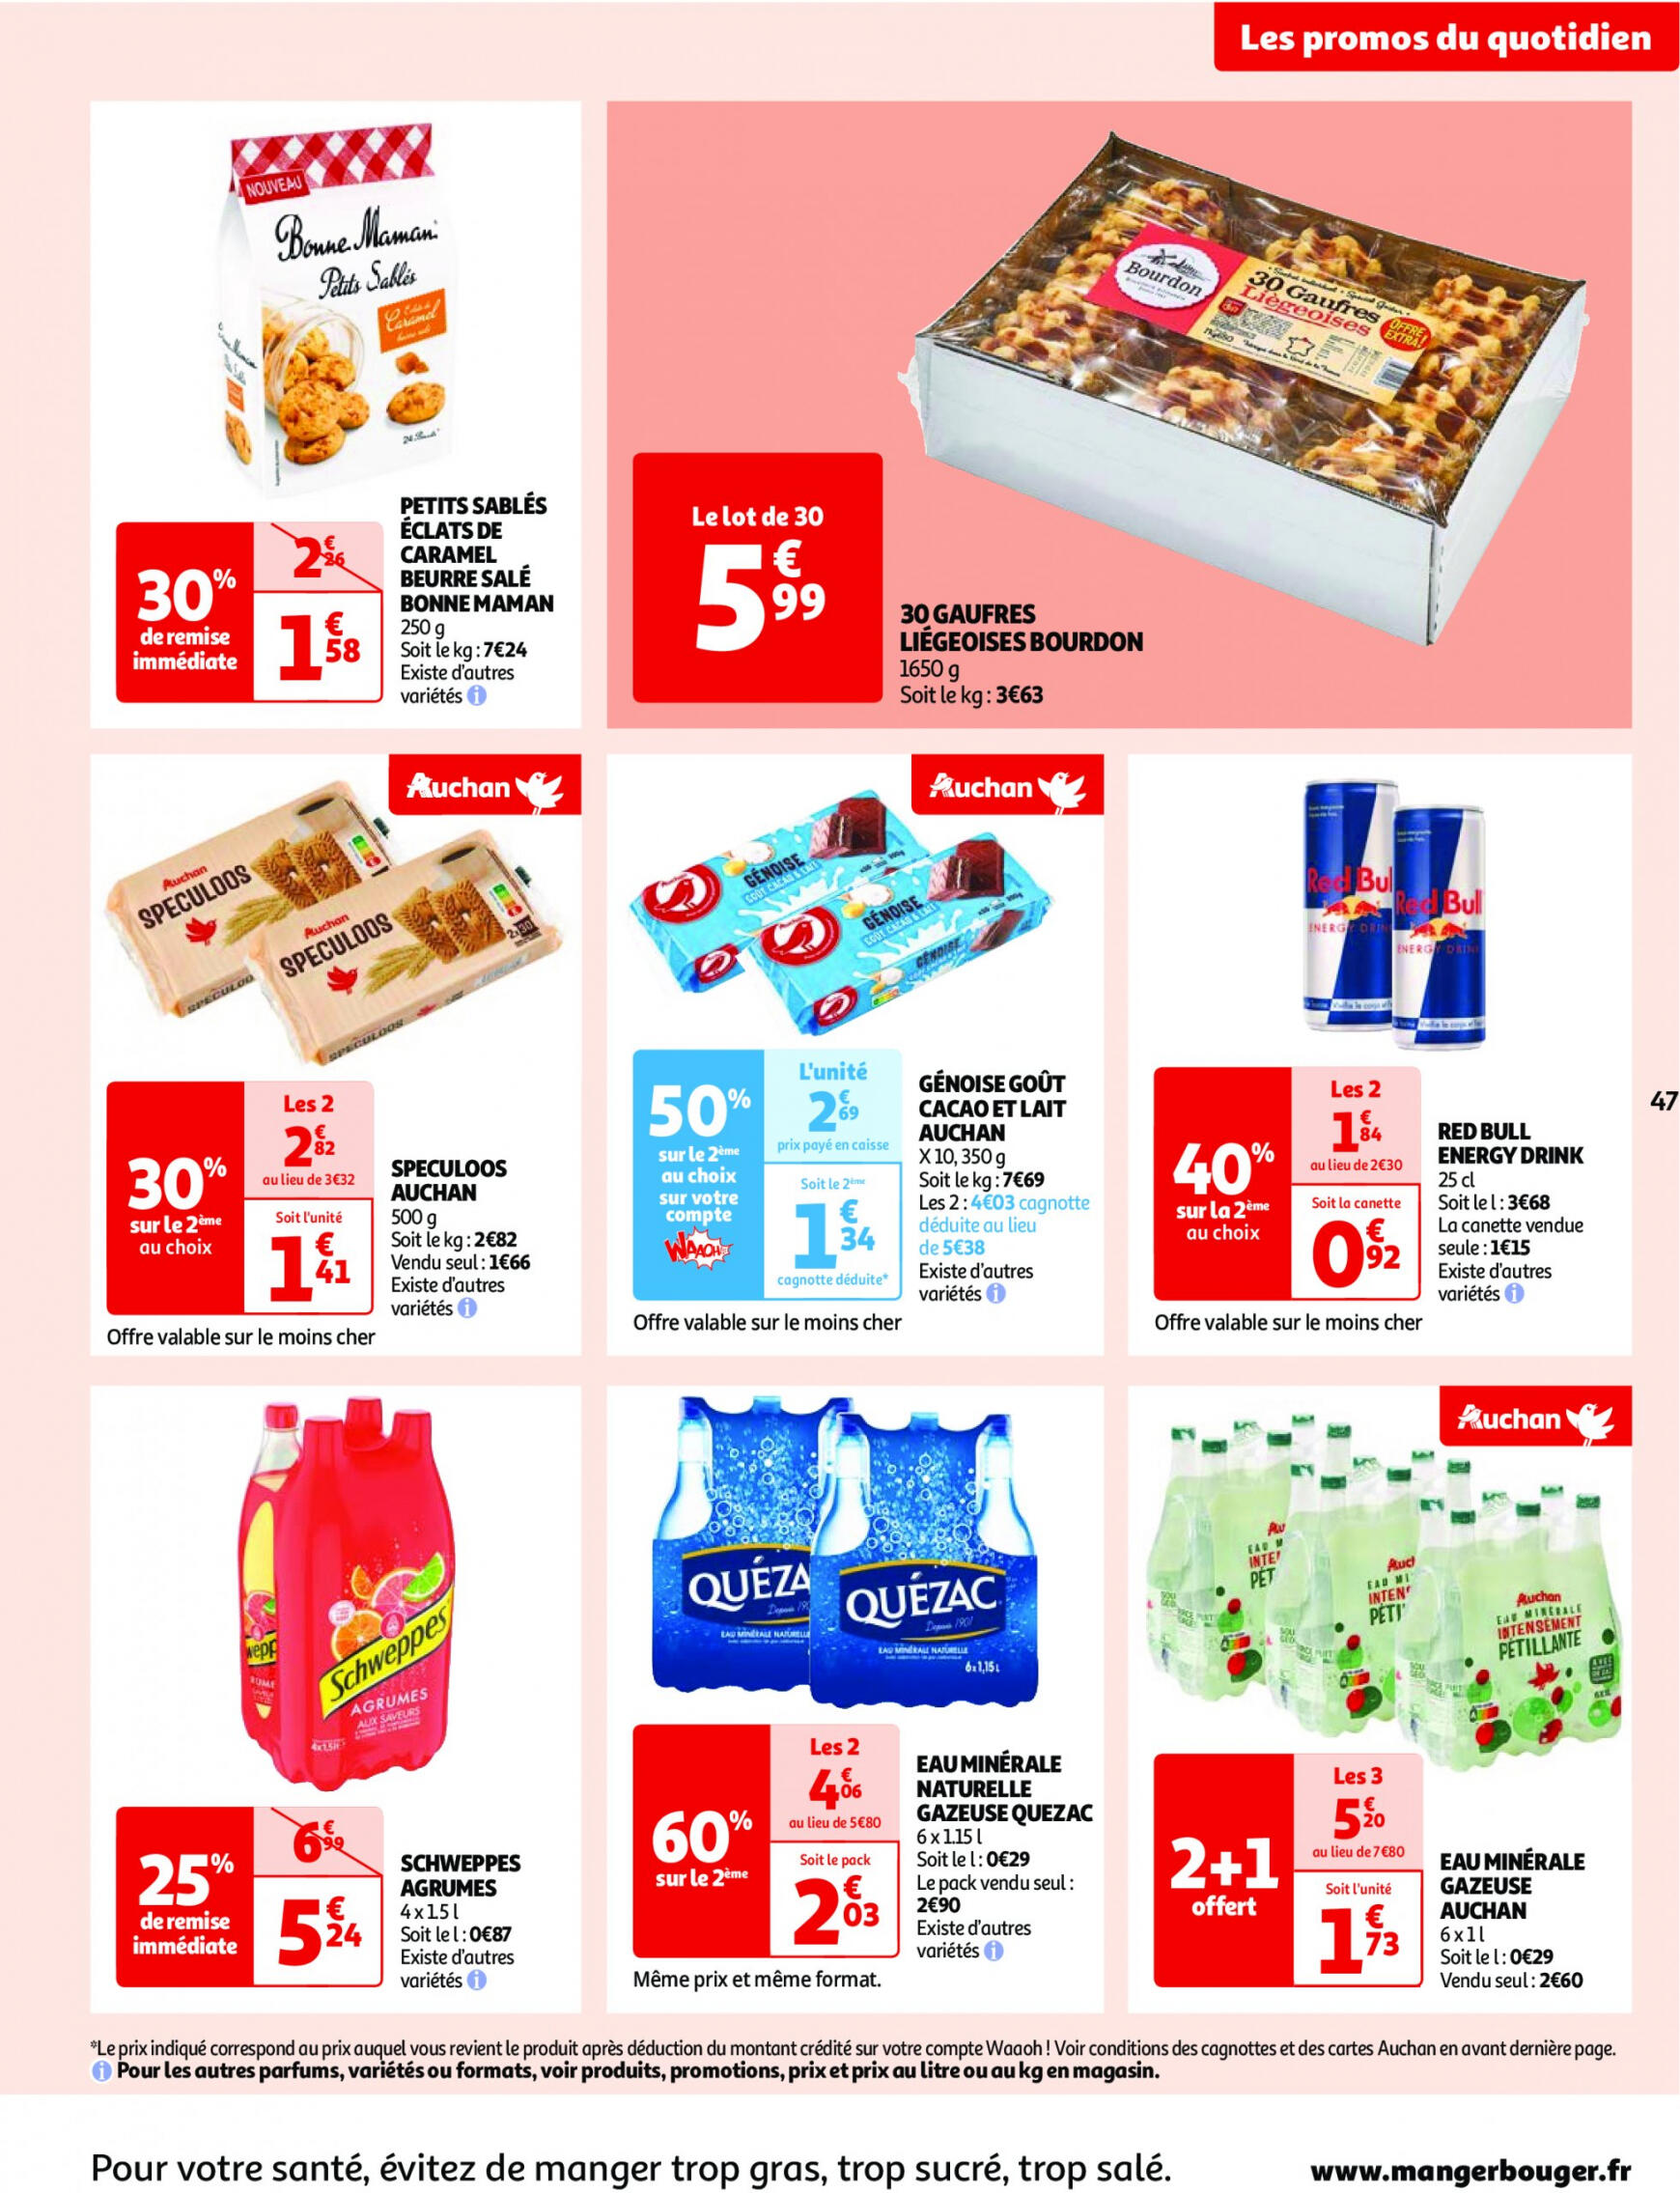 auchan - Prospectus Auchan actuel 30.04. - 06.05. - page: 47